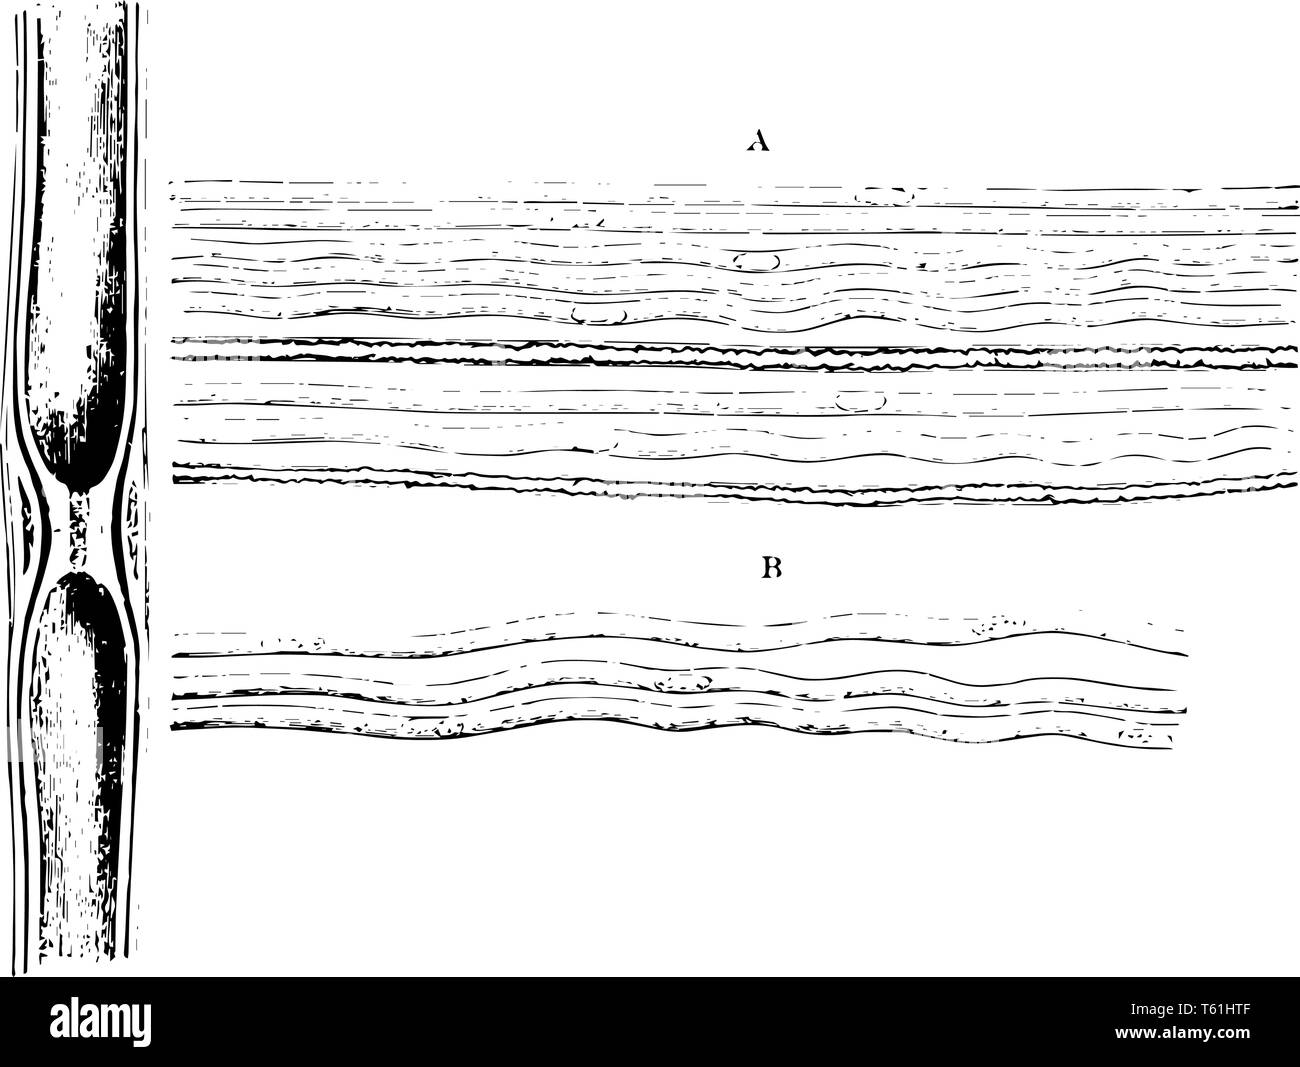 Gallertartige Nervenfasern aus einem Zweig der olfaktorischen Nerv der Schafe vintage Strichzeichnung oder Gravur Abbildung. Stock Vektor